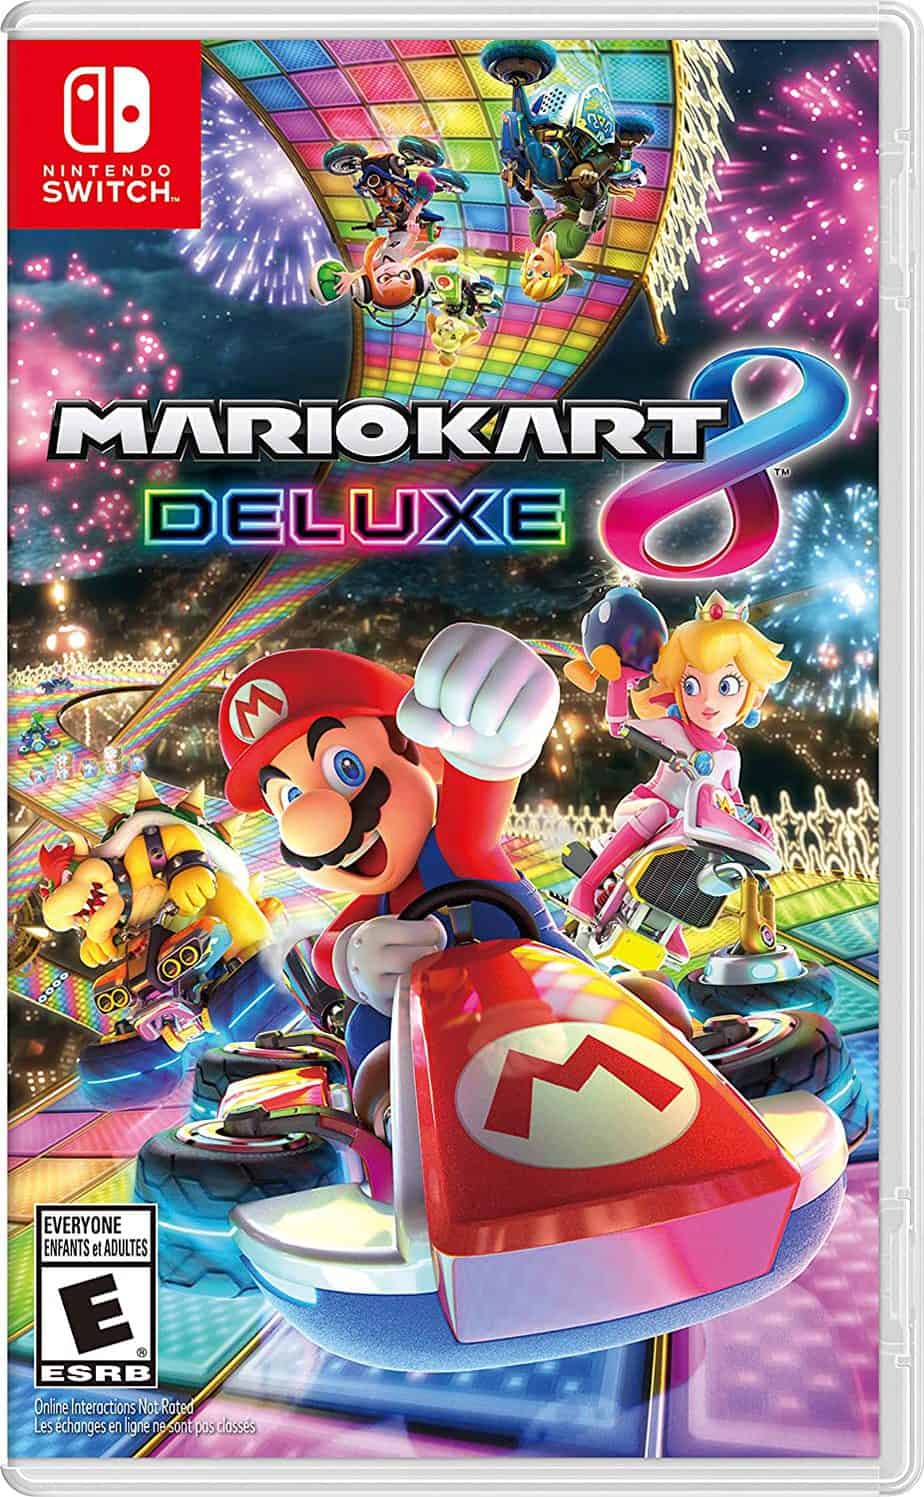 Best Mario multiplayer games - Mario Kart 8 Deluxe